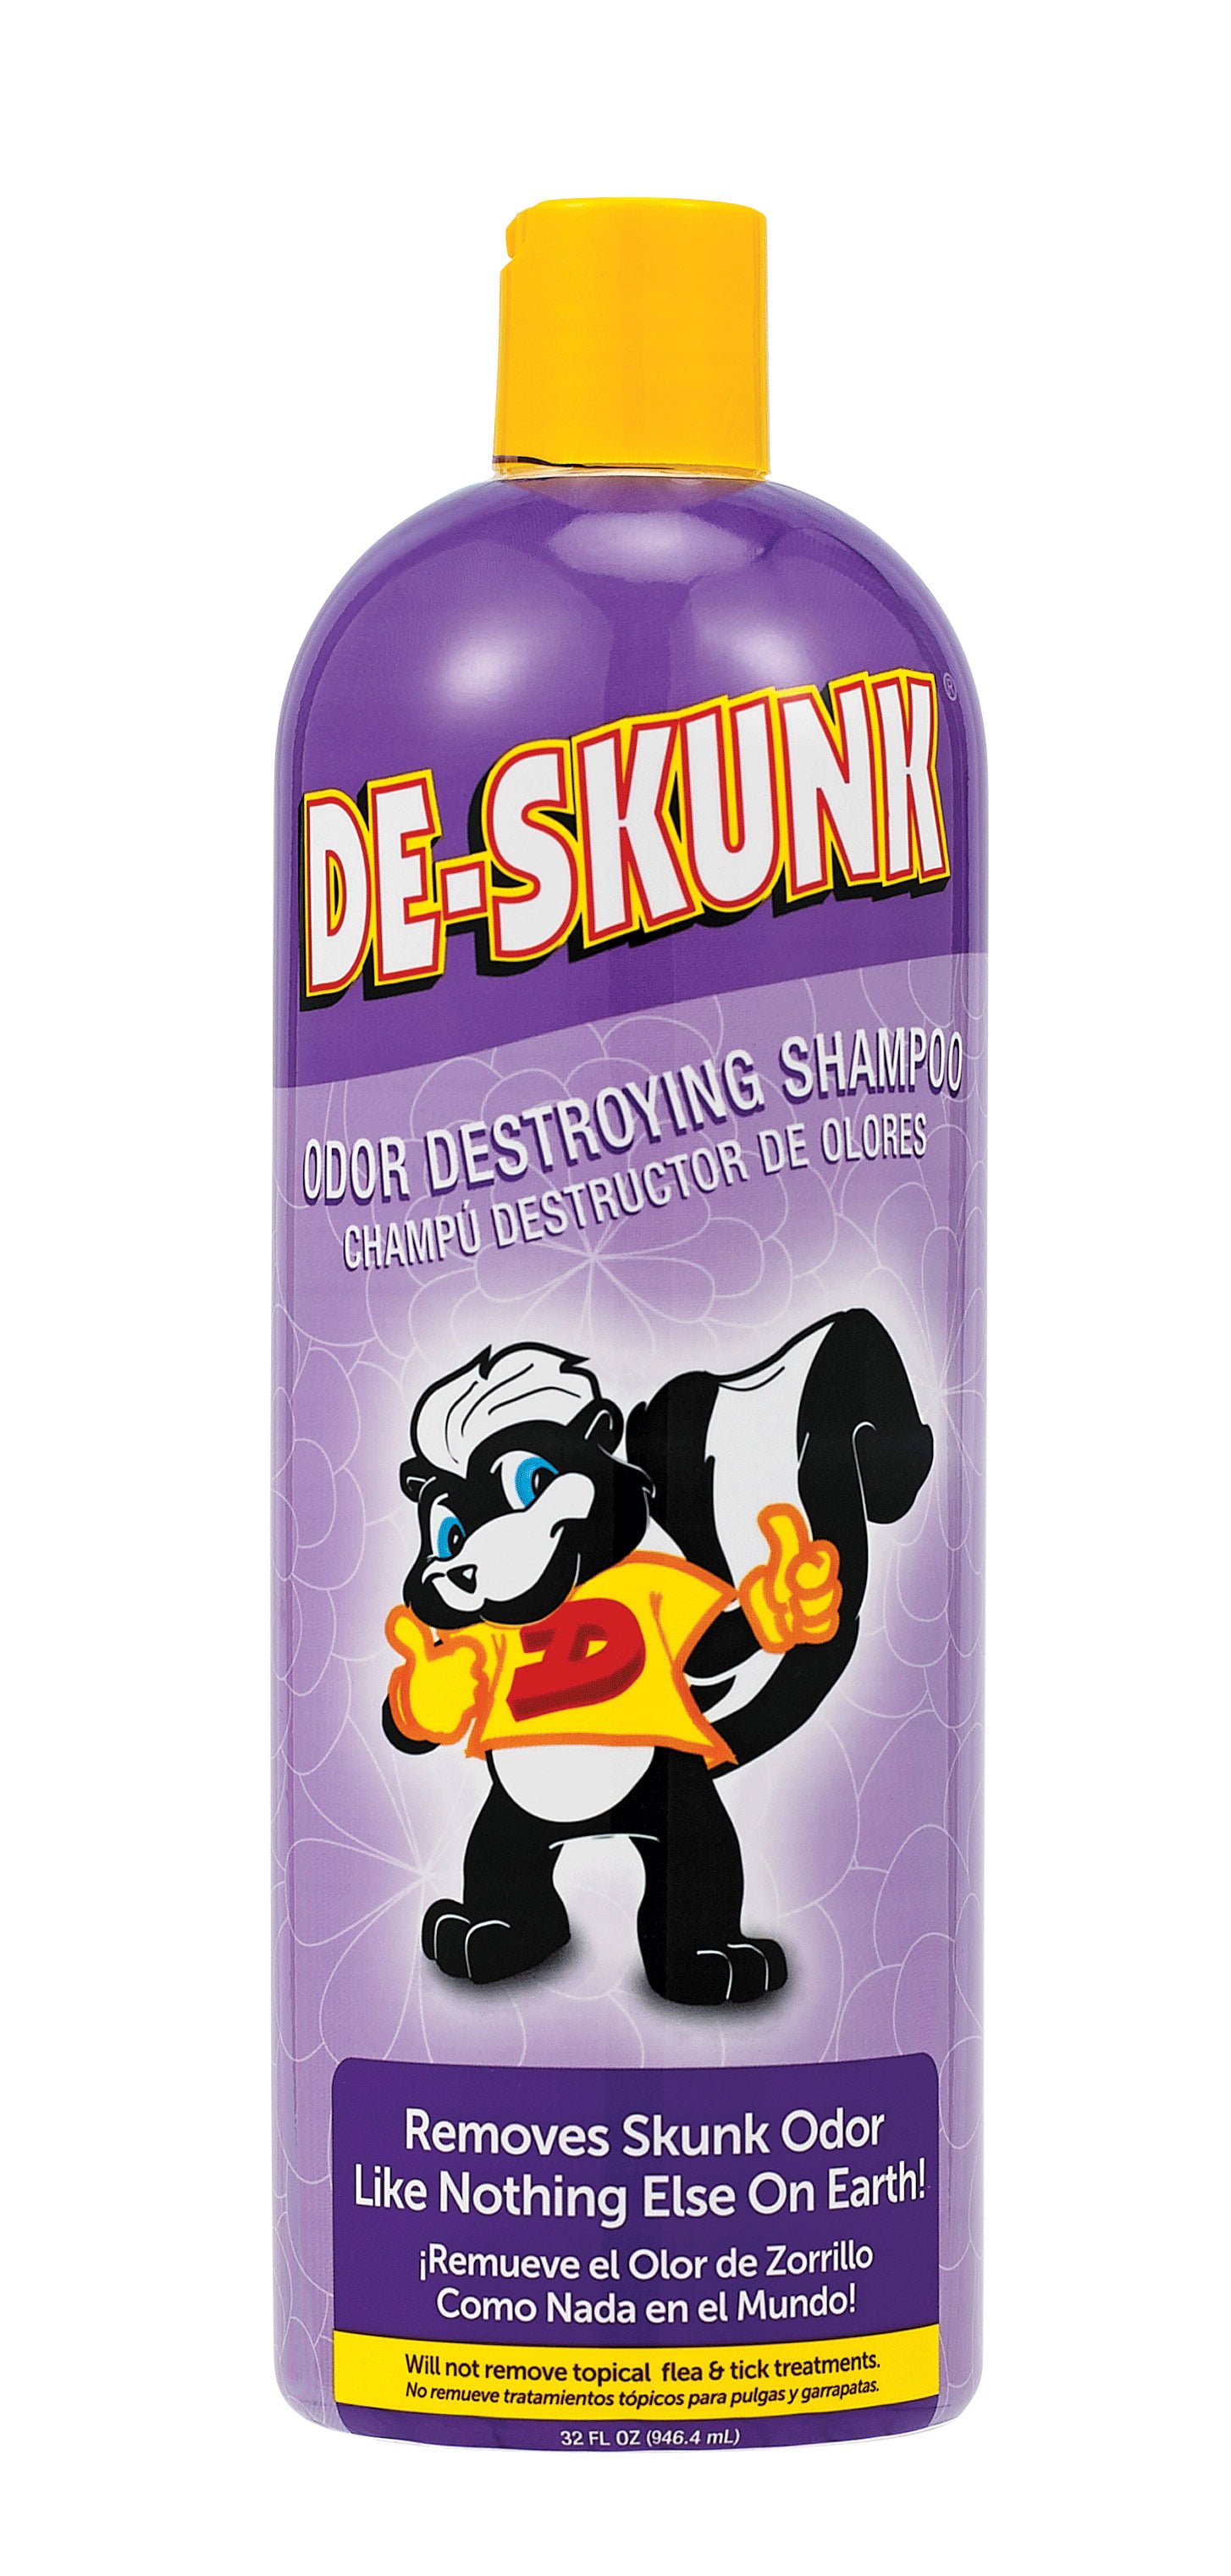 commercial skunk odor remover